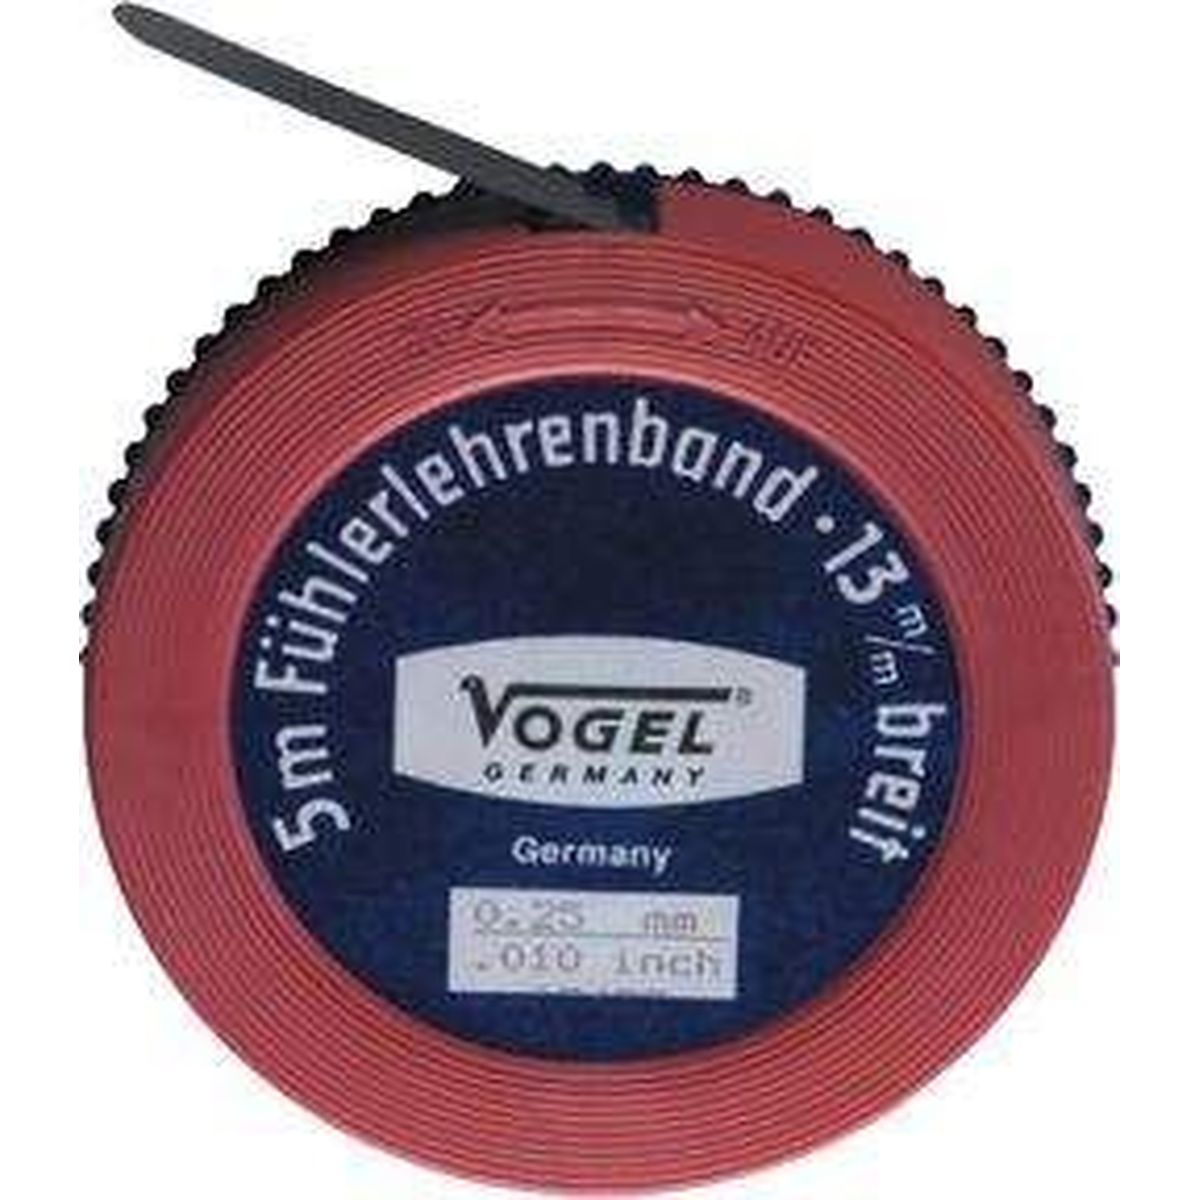 Feeler Gauge Band 0 30mm/.01212 7 mm x 5 VOGEL GERMANY